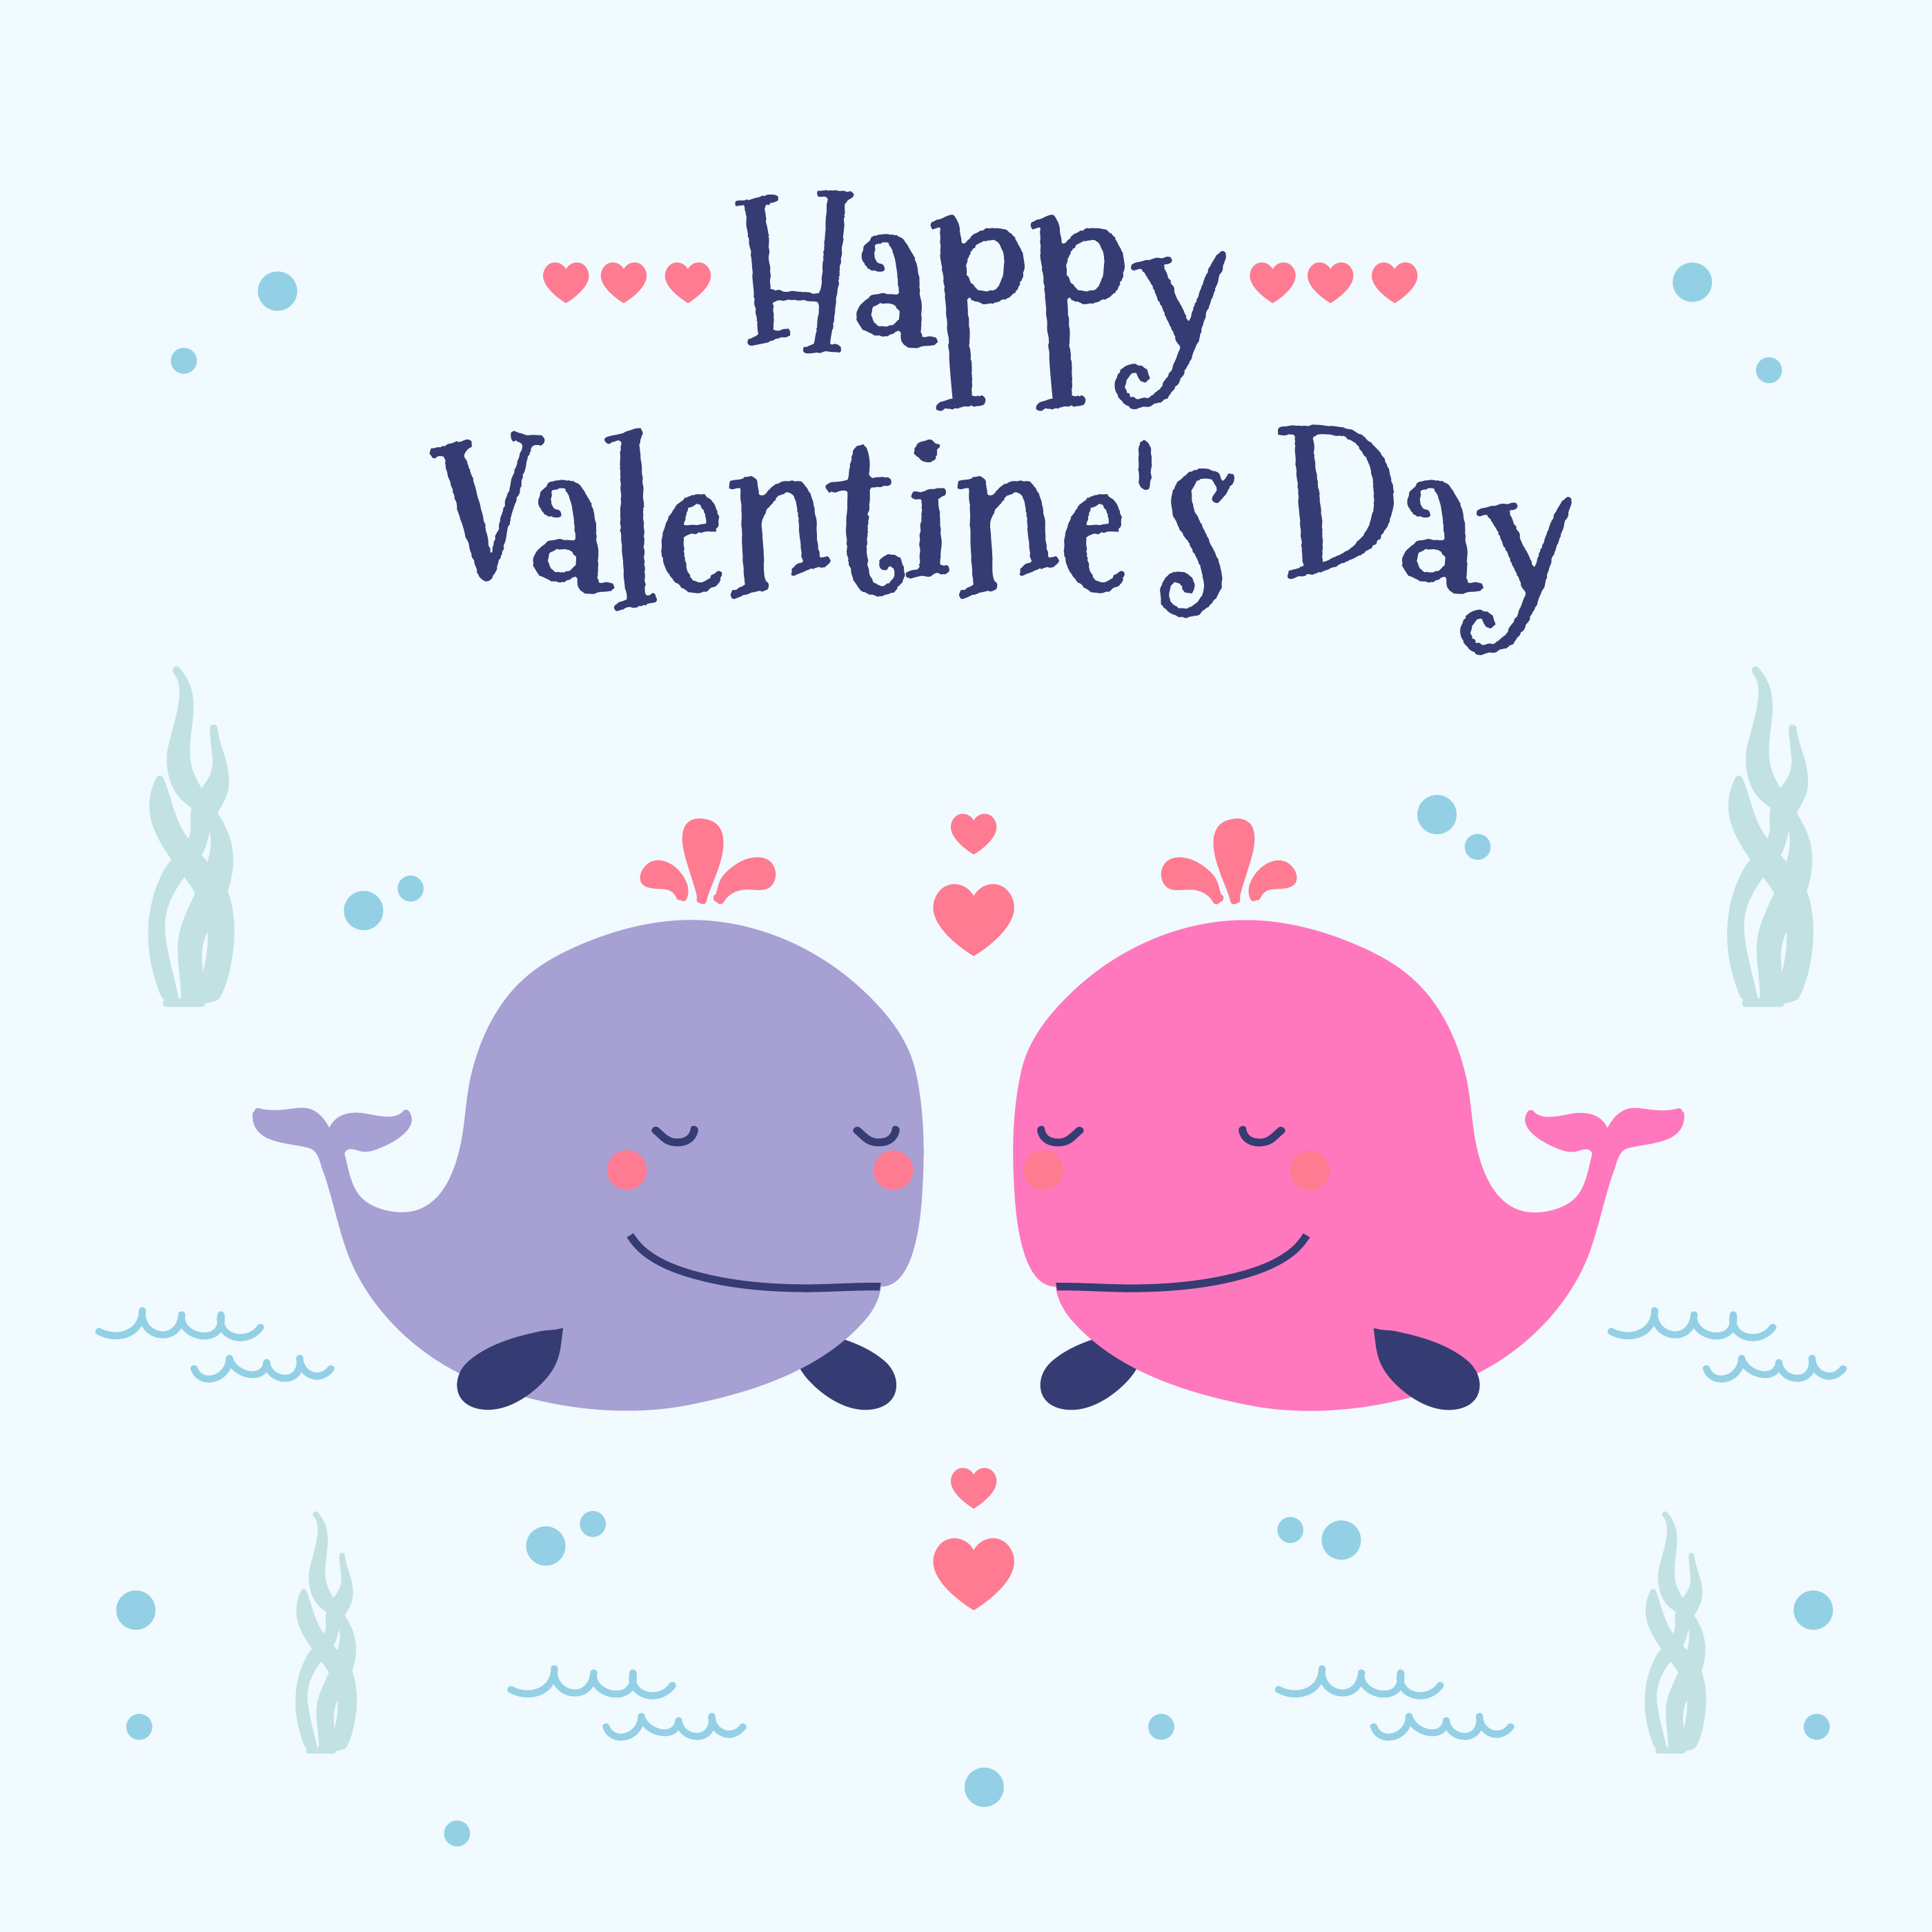 Download Happy Valentines Day Vector - Download Free Vectors ...